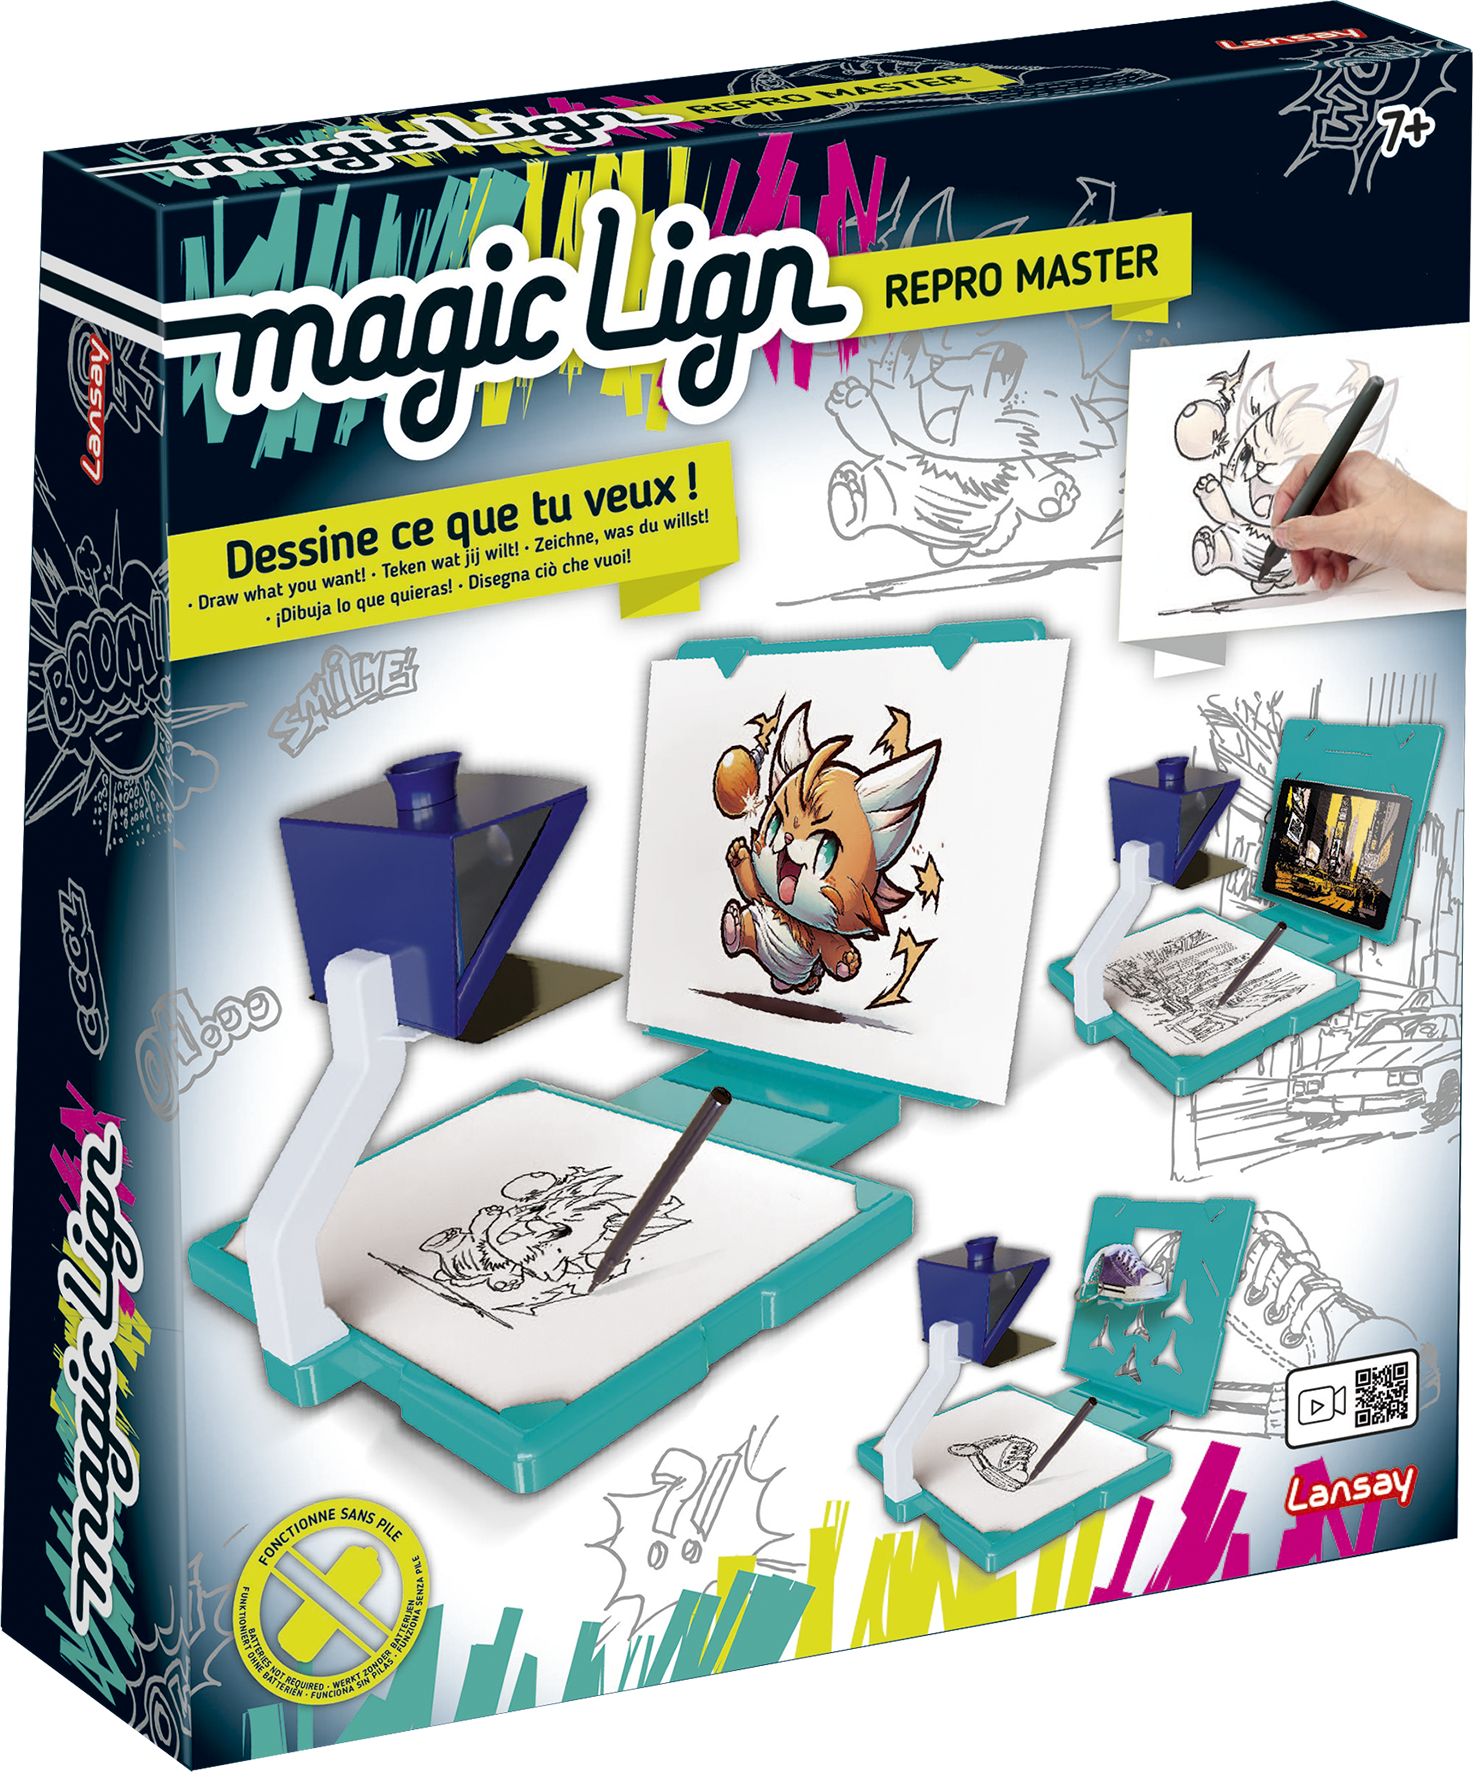 Projecteur à dessins Pocket Magic Lign Lansay : King Jouet, Dessin